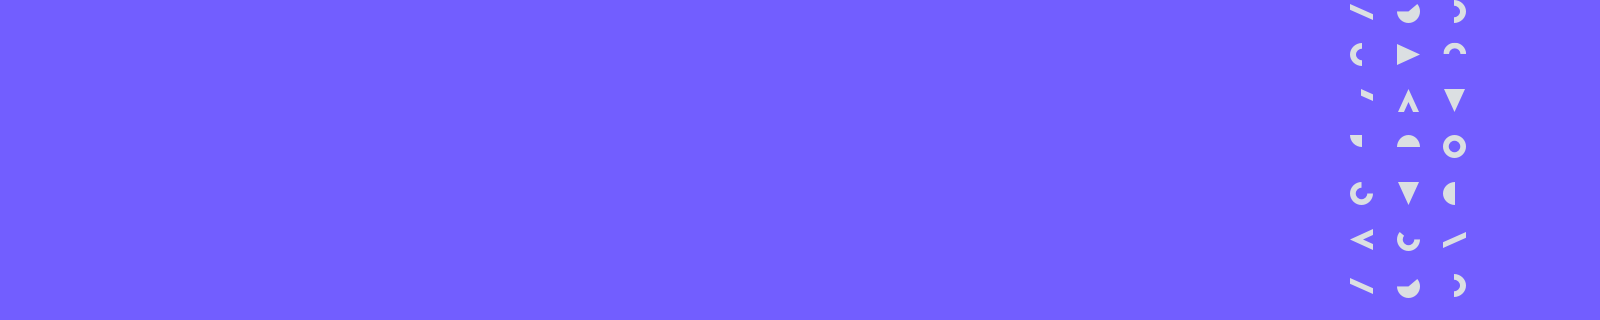 anchormarquee-purple-alternate-1-short-1600x320